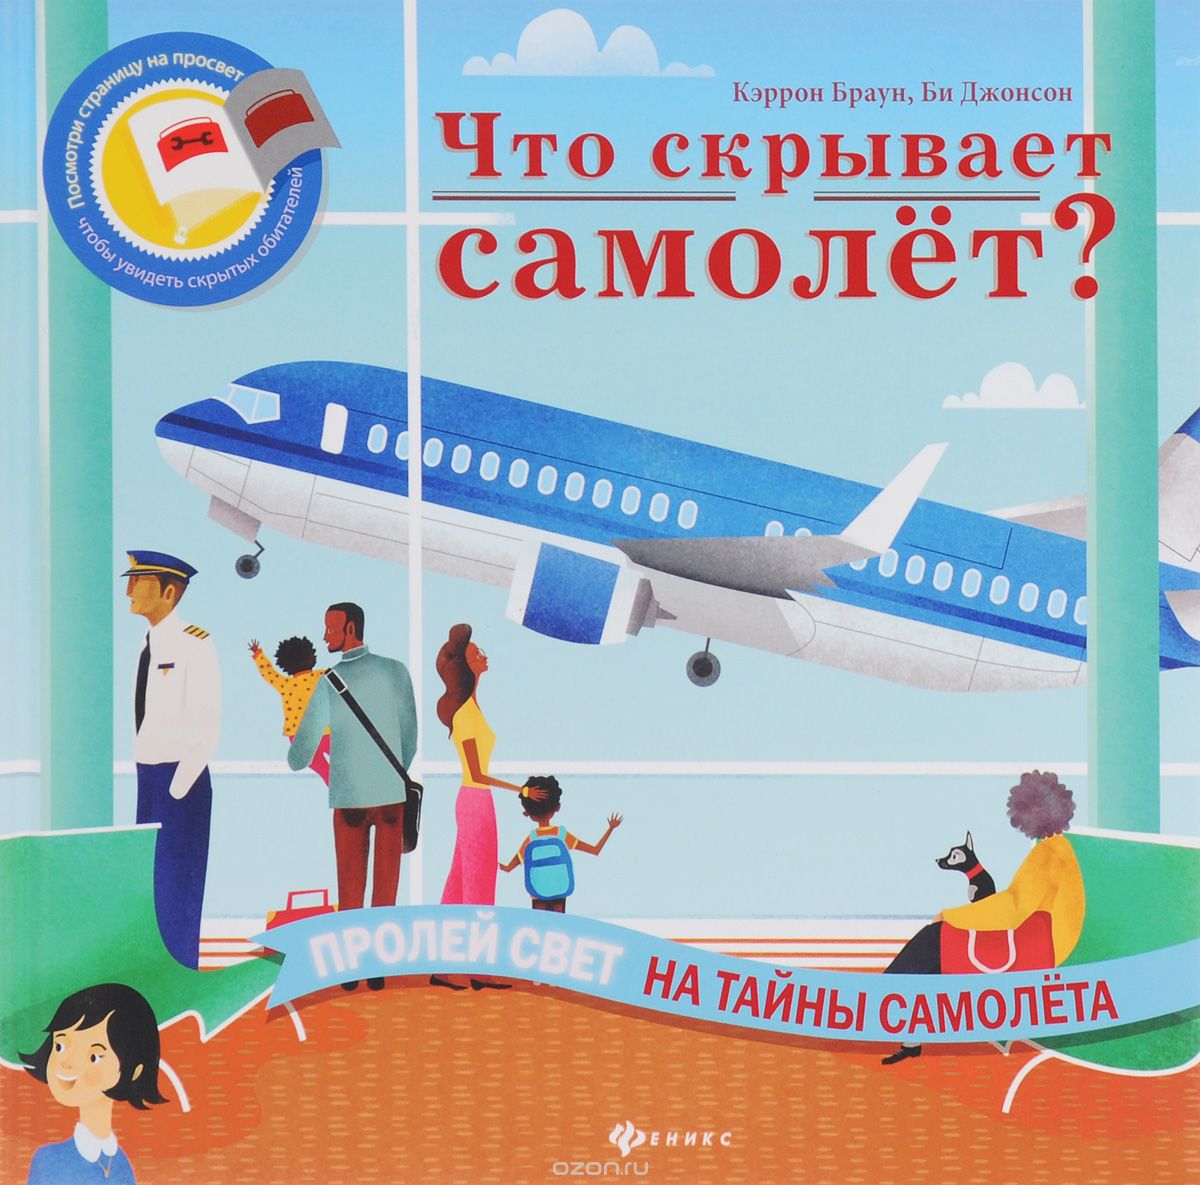 Скачать книгу "Что скрывает самолет?, Кэррон Браун, Би Джонсон"